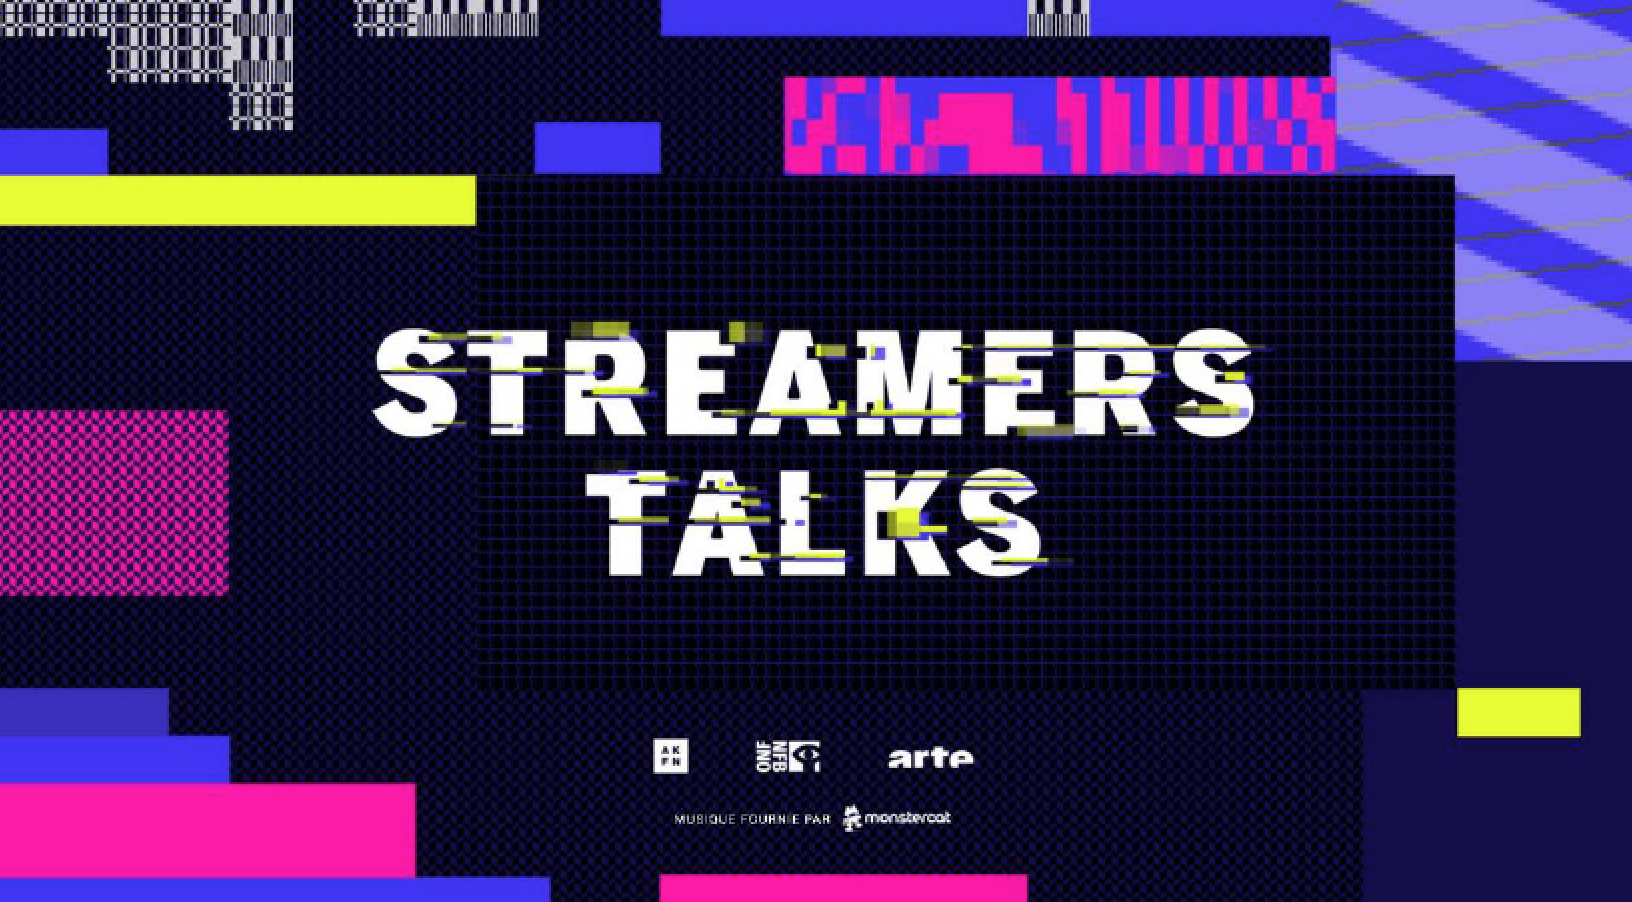 Tournage de Streamers, une expérience documentaire en temps réel sur le phénomène Twitch